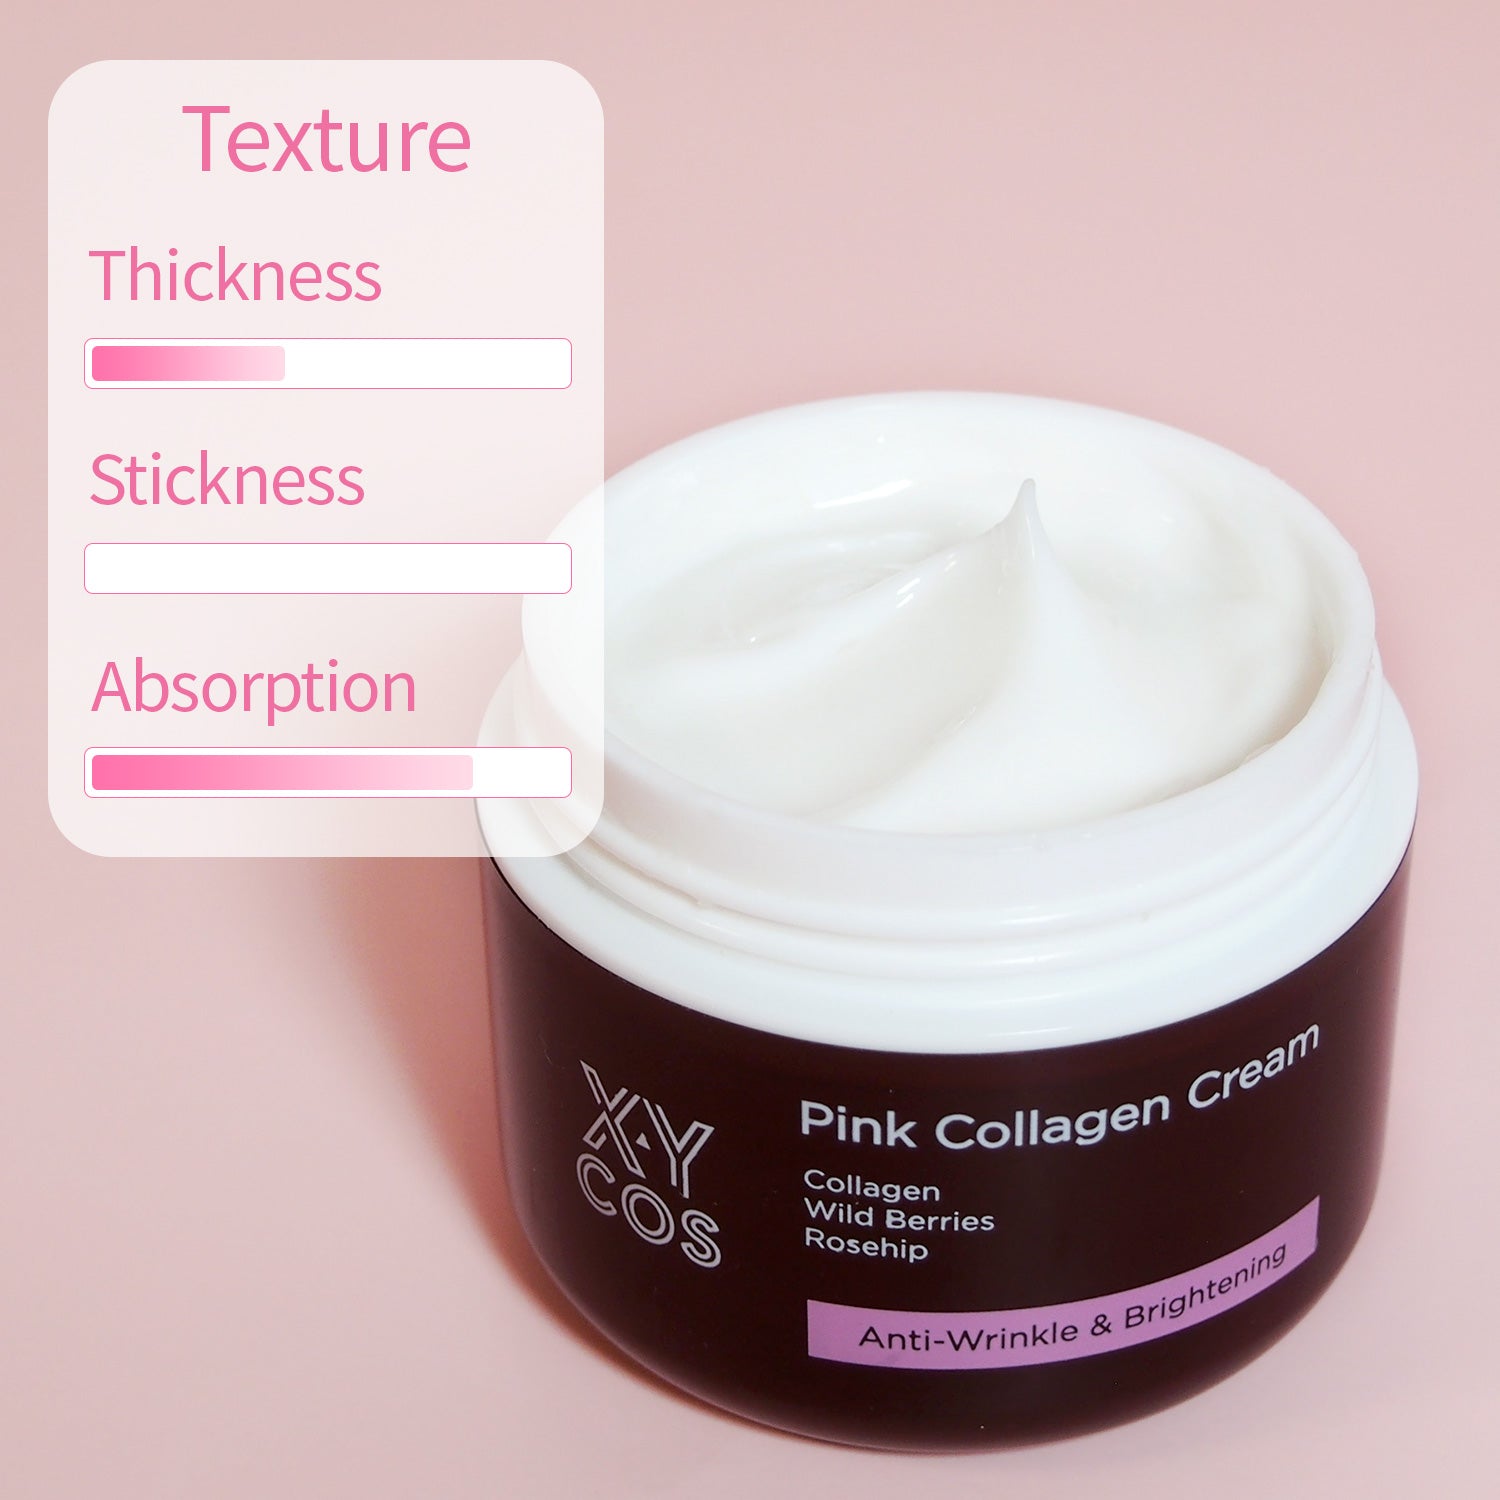 Pink Collagen Cream